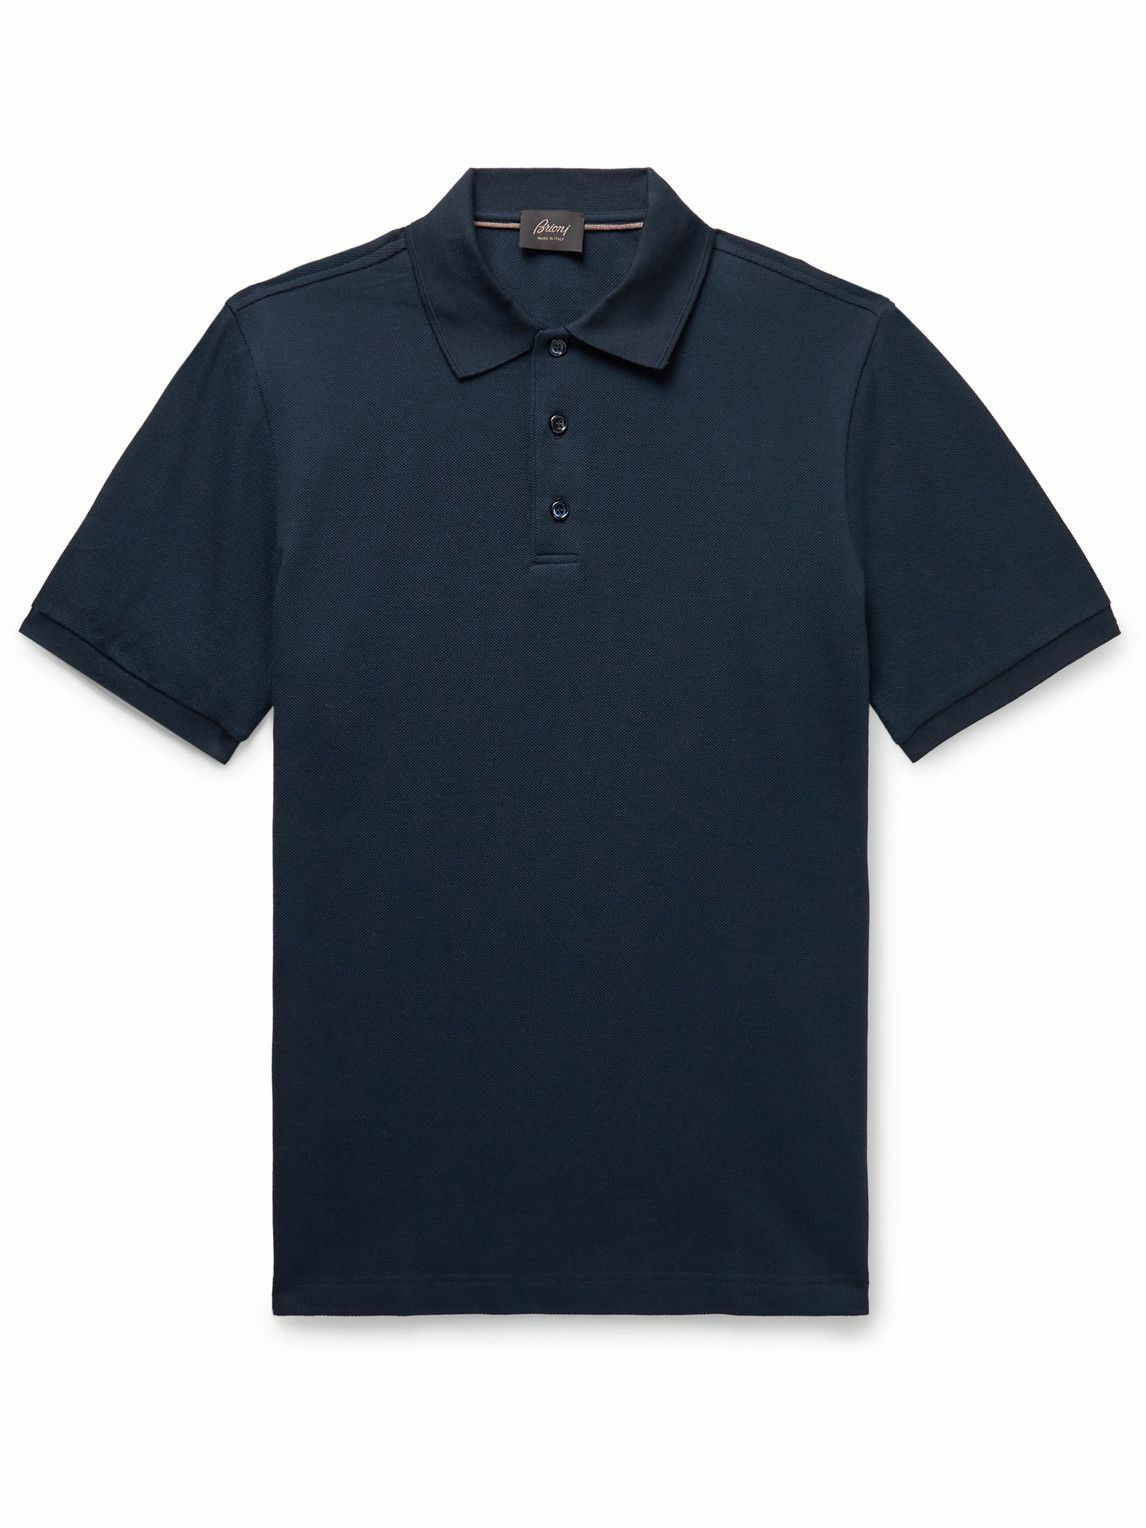 Brioni - Cotton-Piqué Polo Shirt - Blue Brioni